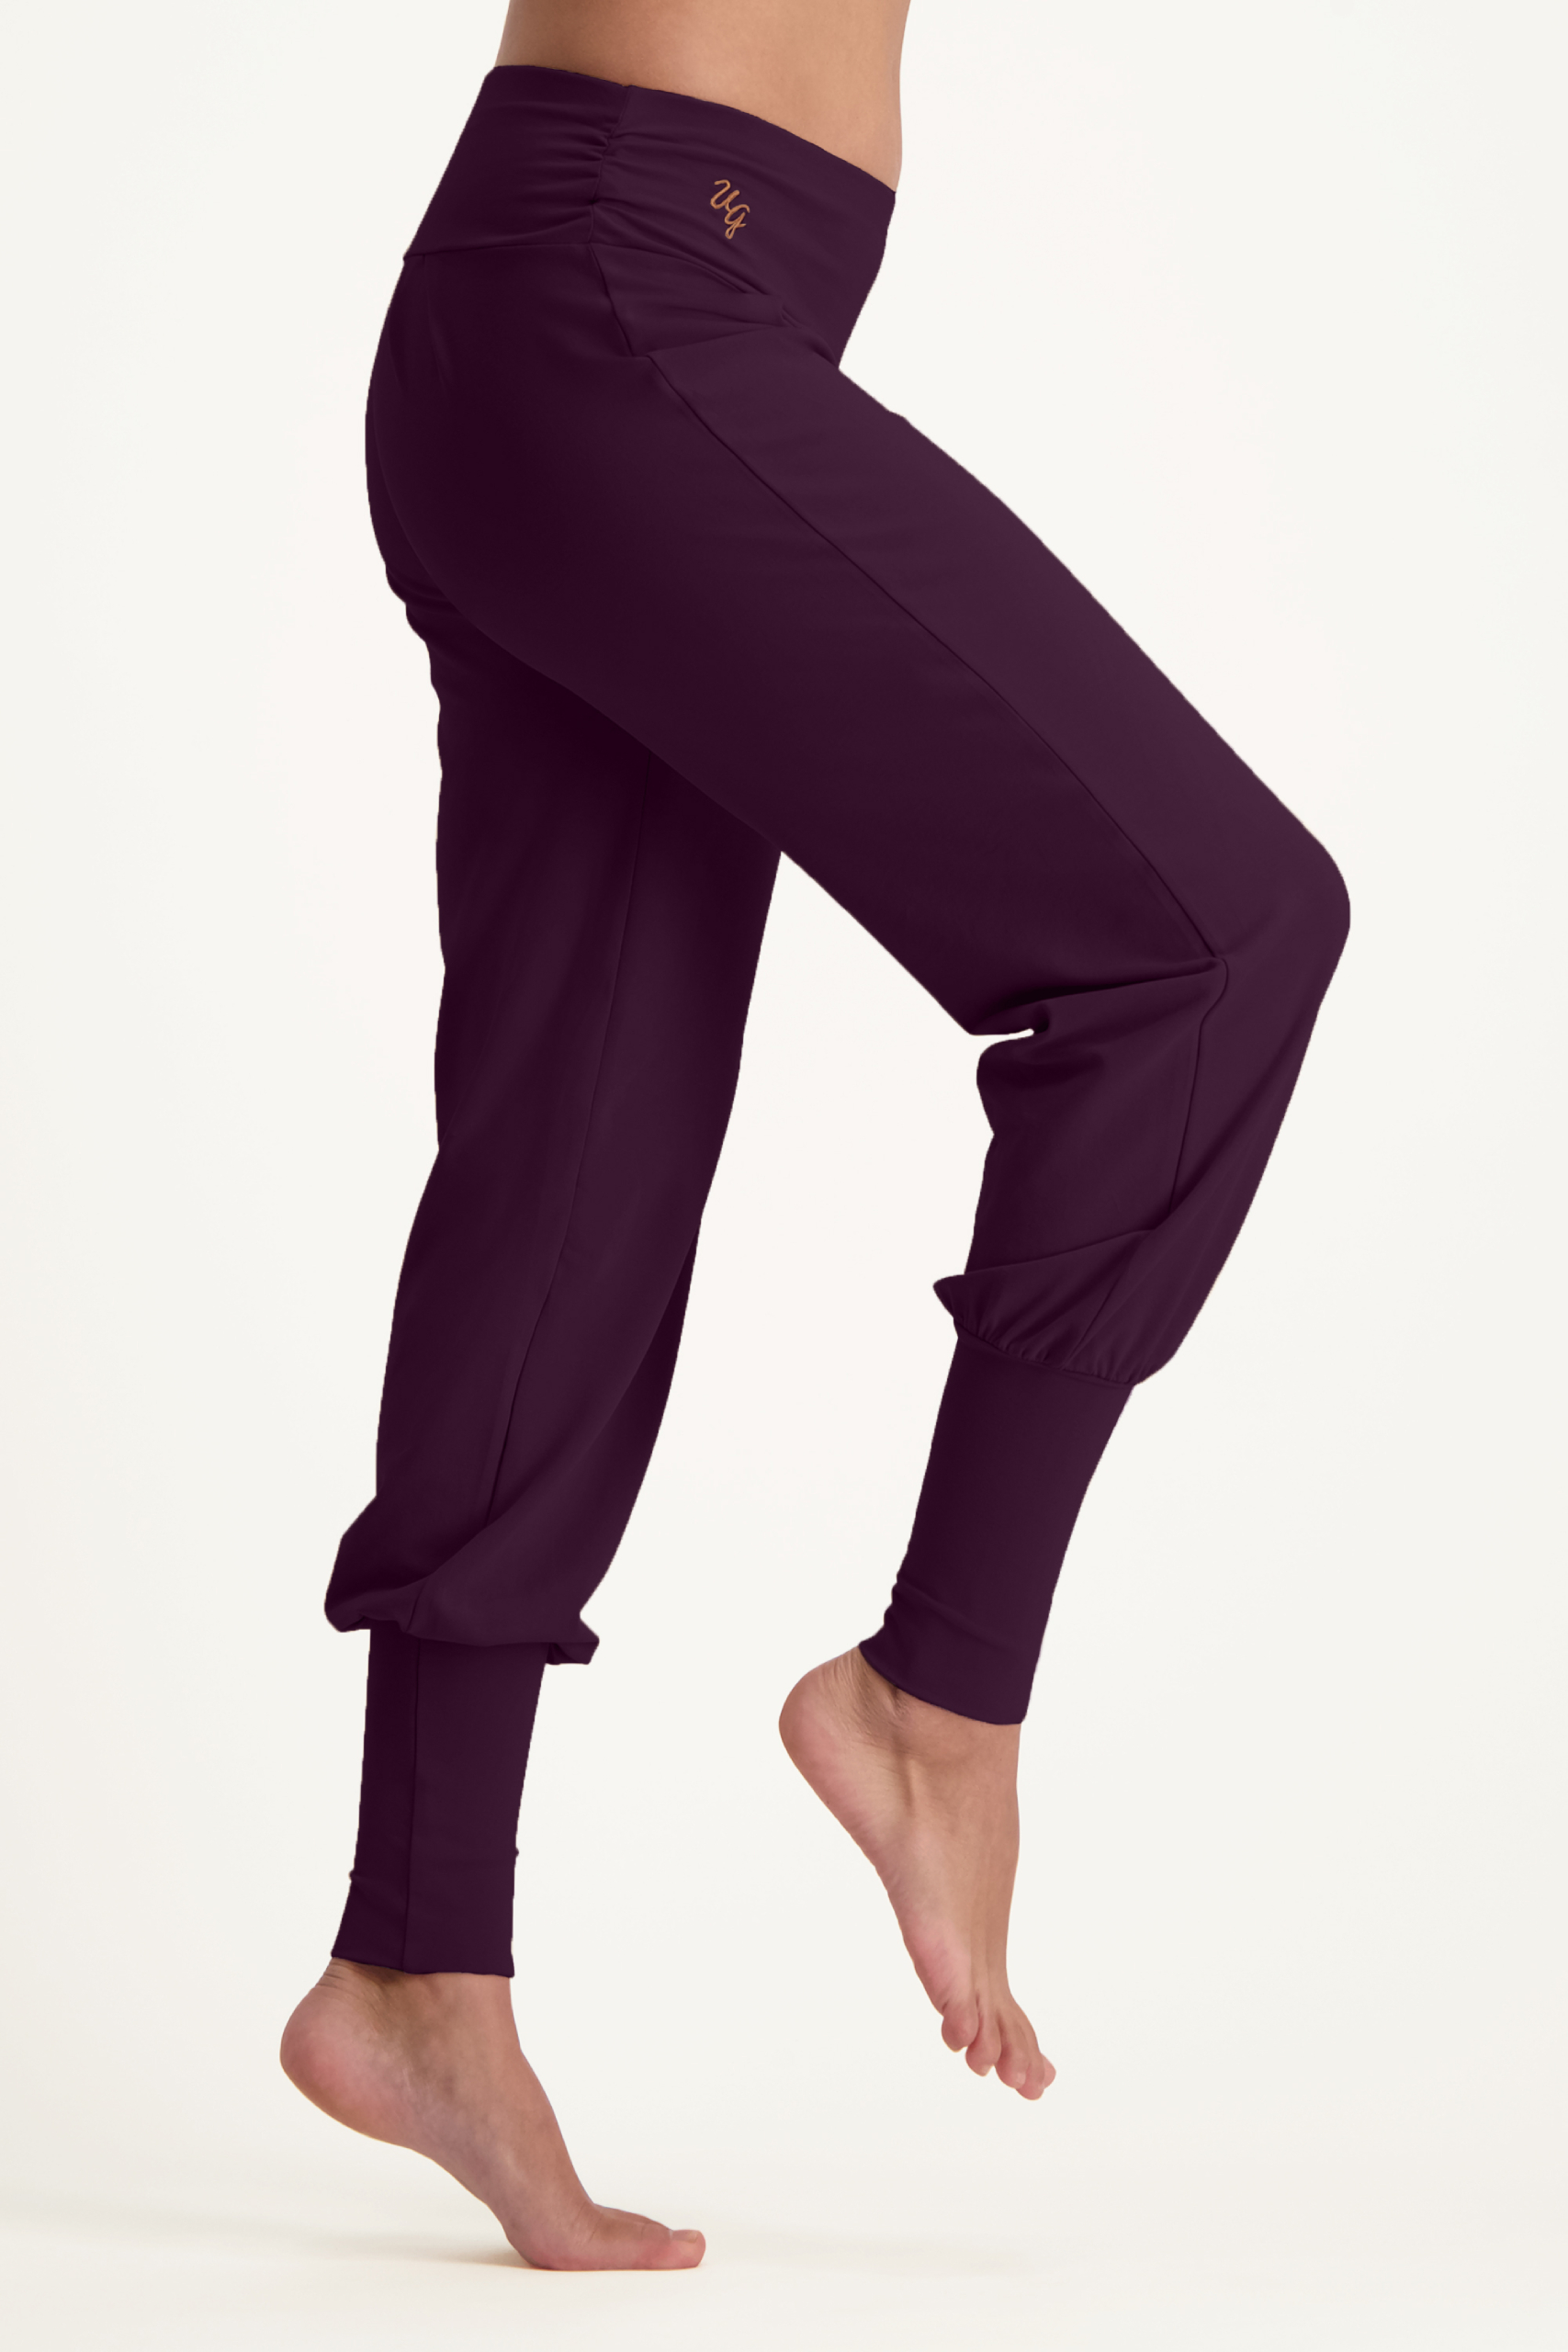 mogelijkheid Mannelijkheid Uitdrukkelijk Yoga broeken | Slim fit & bootcut foldover | Urban Goddess